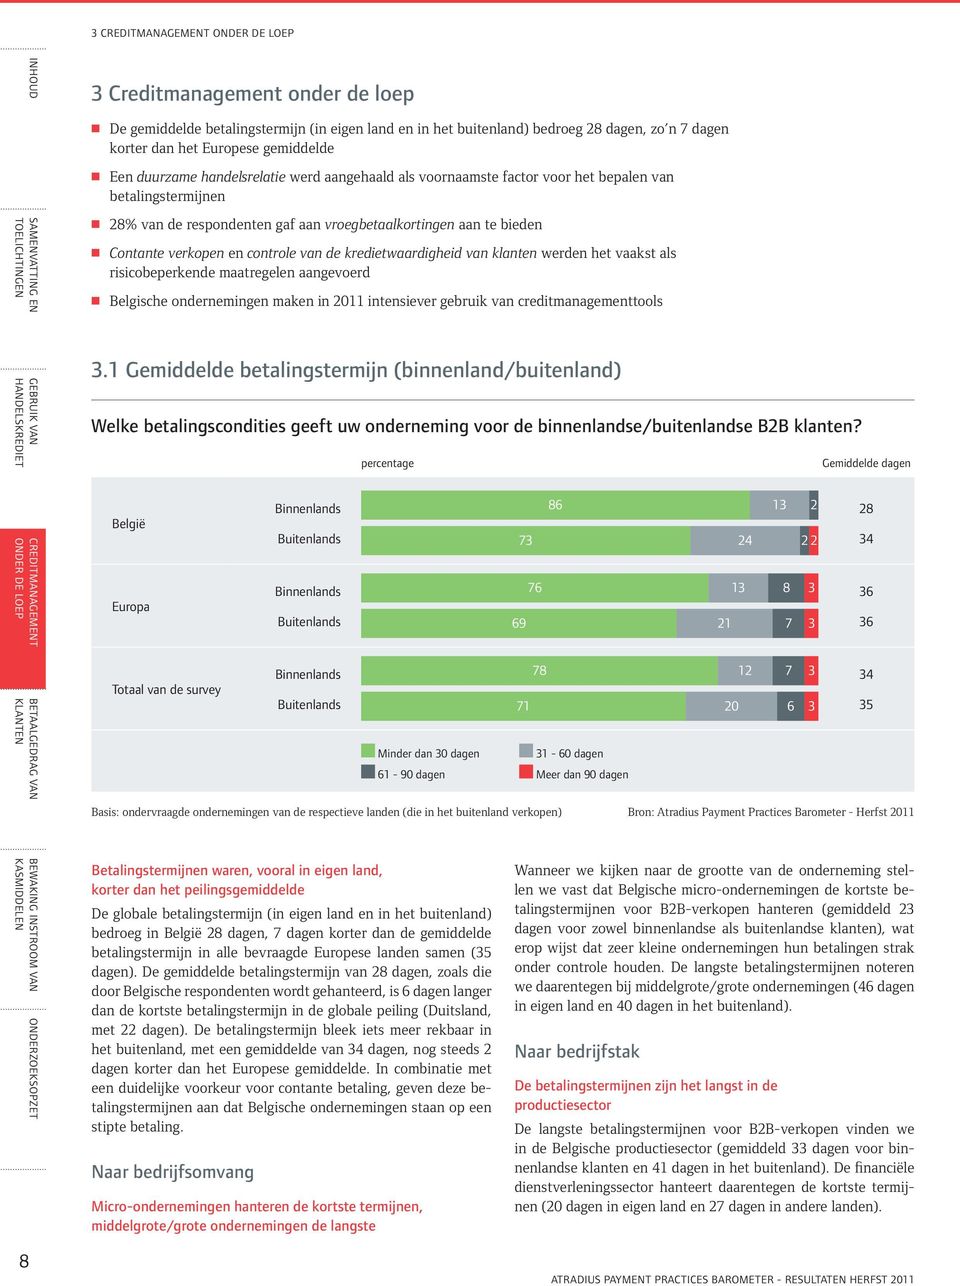 vaakst als risicobeperkende maatregelen aangevoerd Belgische ondernemingen maken in 2011 intensiever gebruik van creditmanagementtools 3.